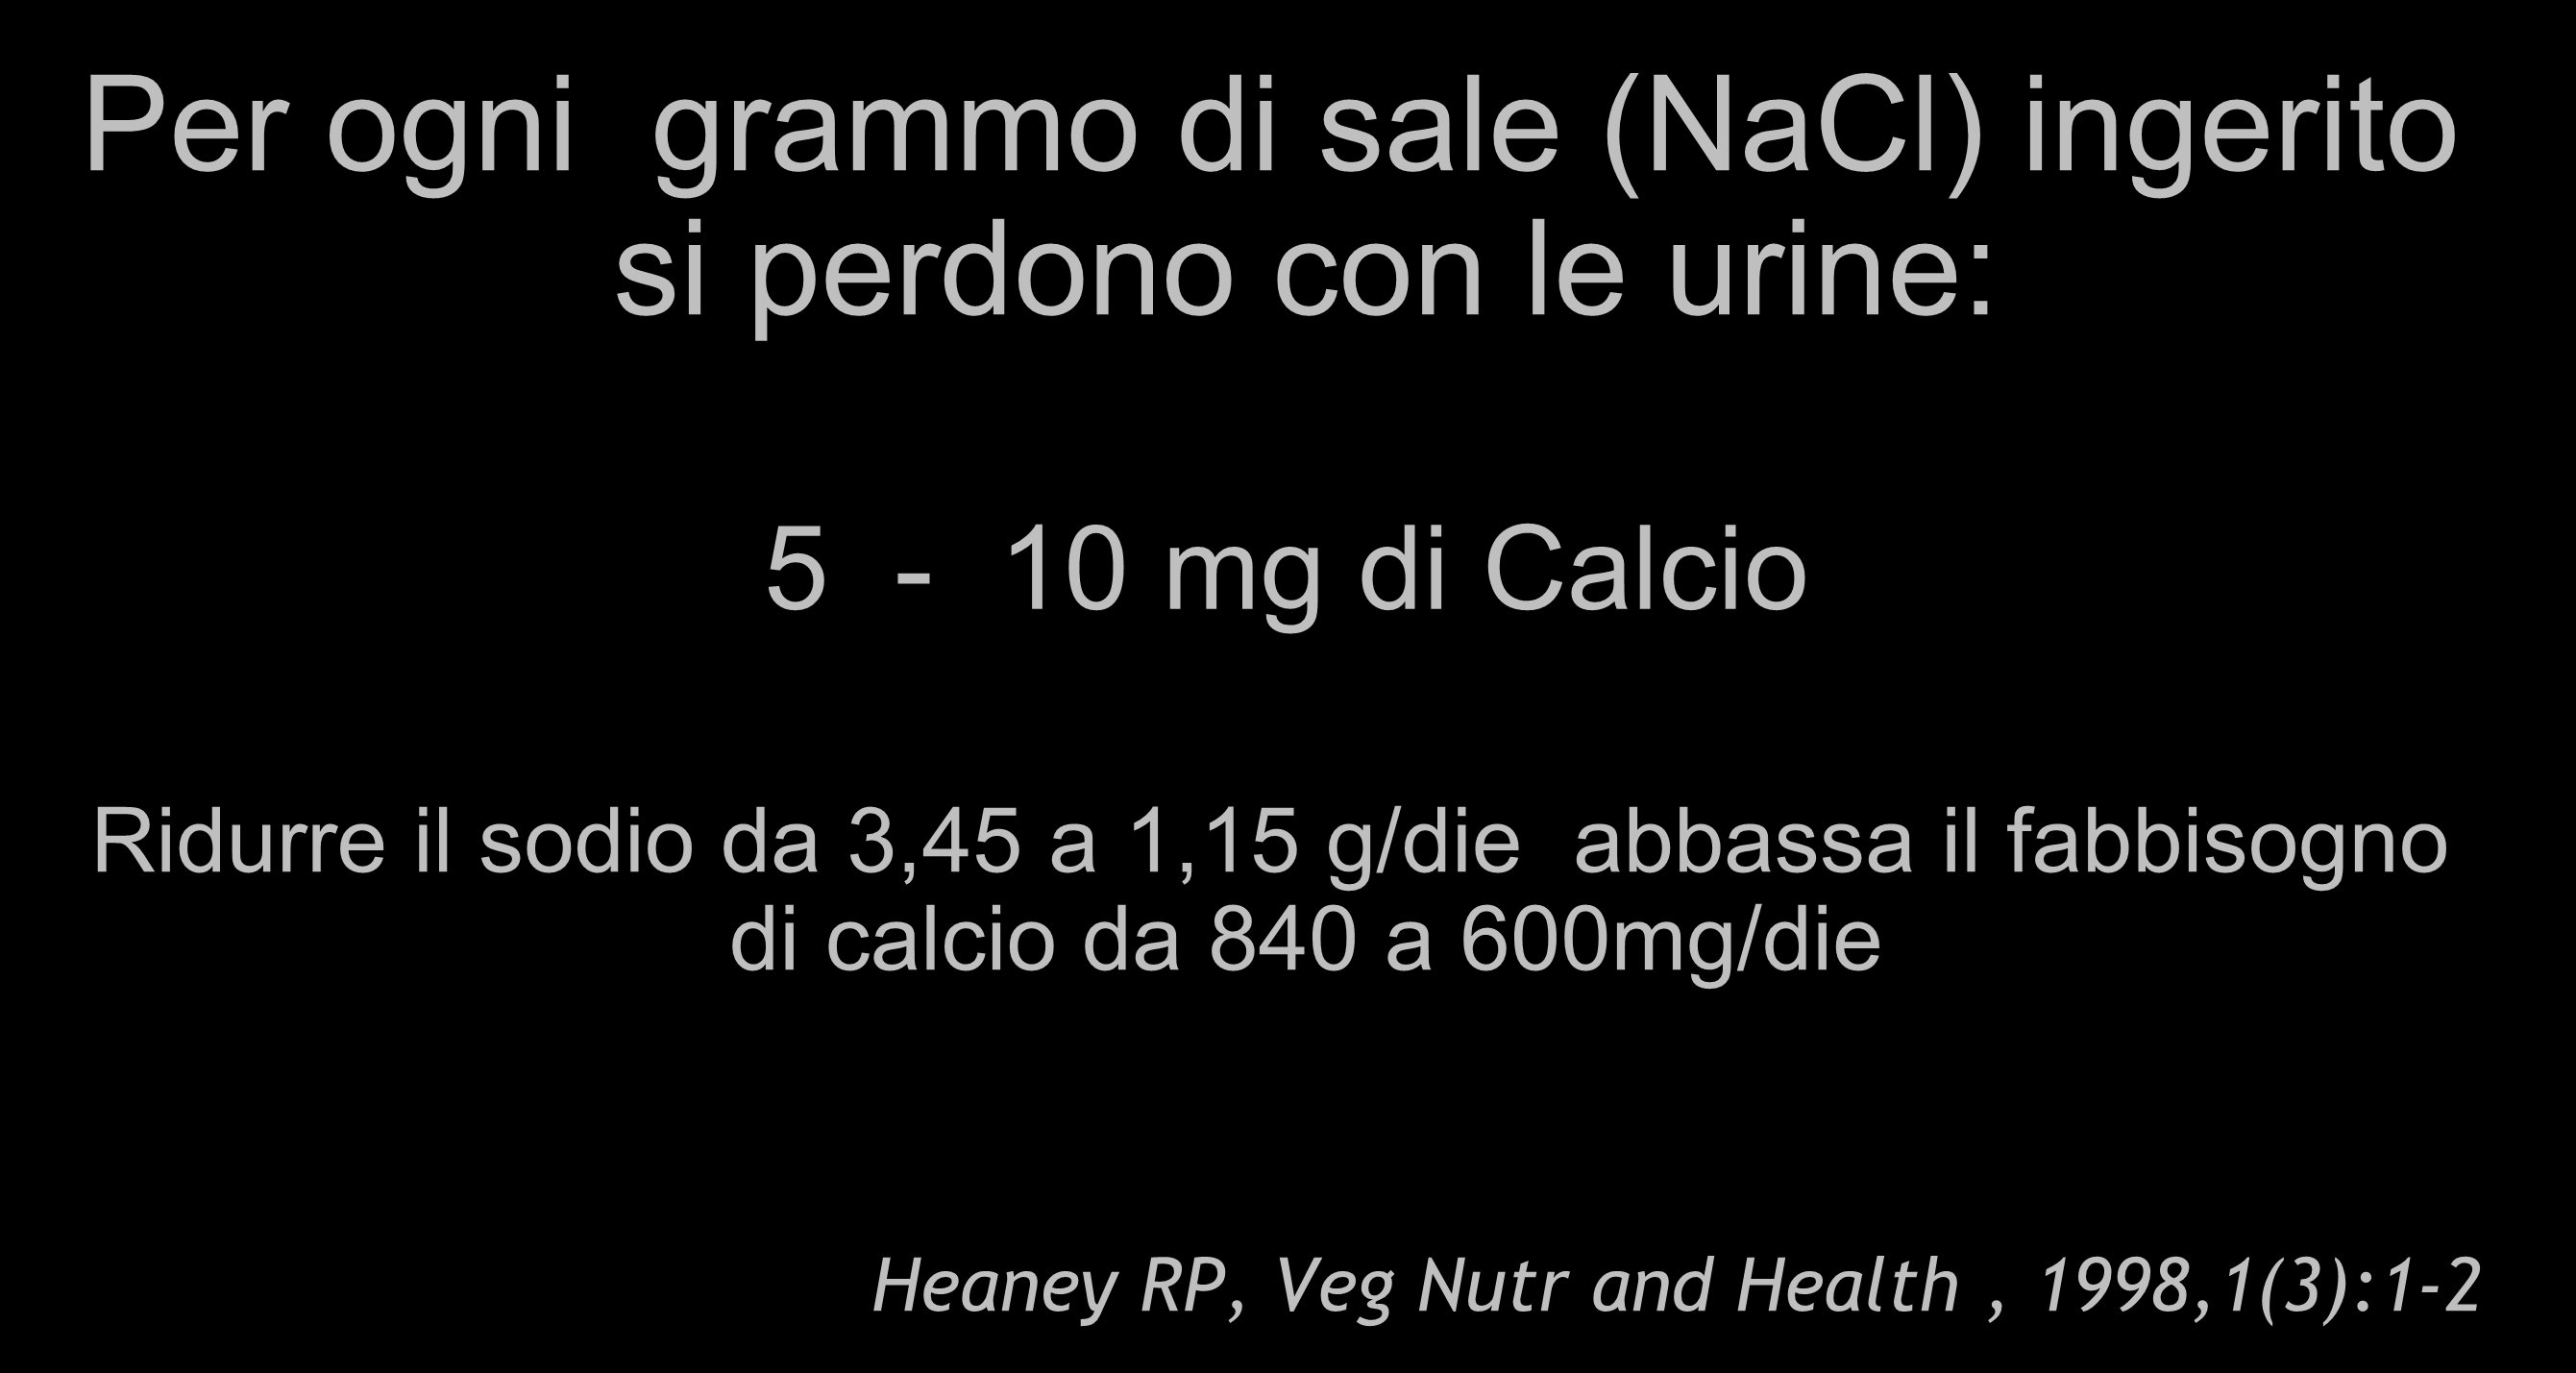 CALCIO E SODIO Per ogni grammo di sale (NaCl) ingerito si perdono con le urine: 5-10 mg di Calcio Ridurre il sodio